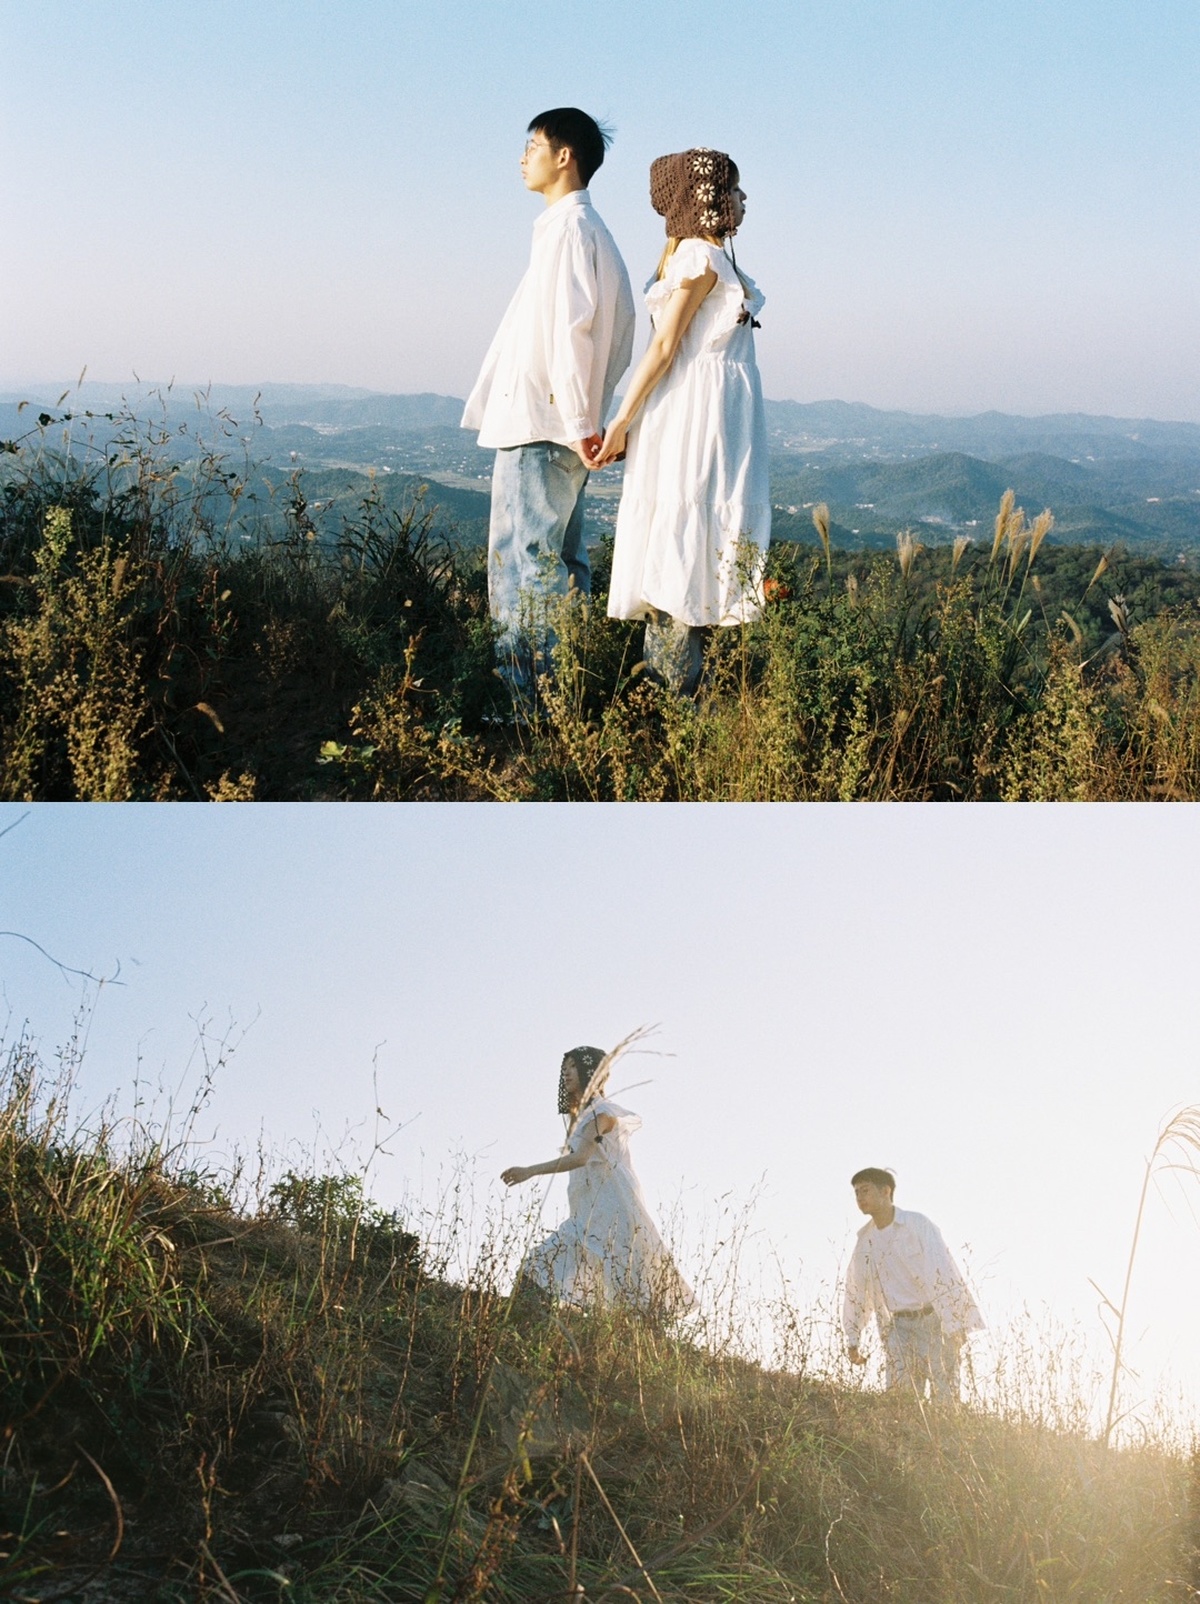 一个人和一个女人站在山顶上 背景是山脉 一个穿着连衣裙的女人正在牵着另一个女人的手走下山。